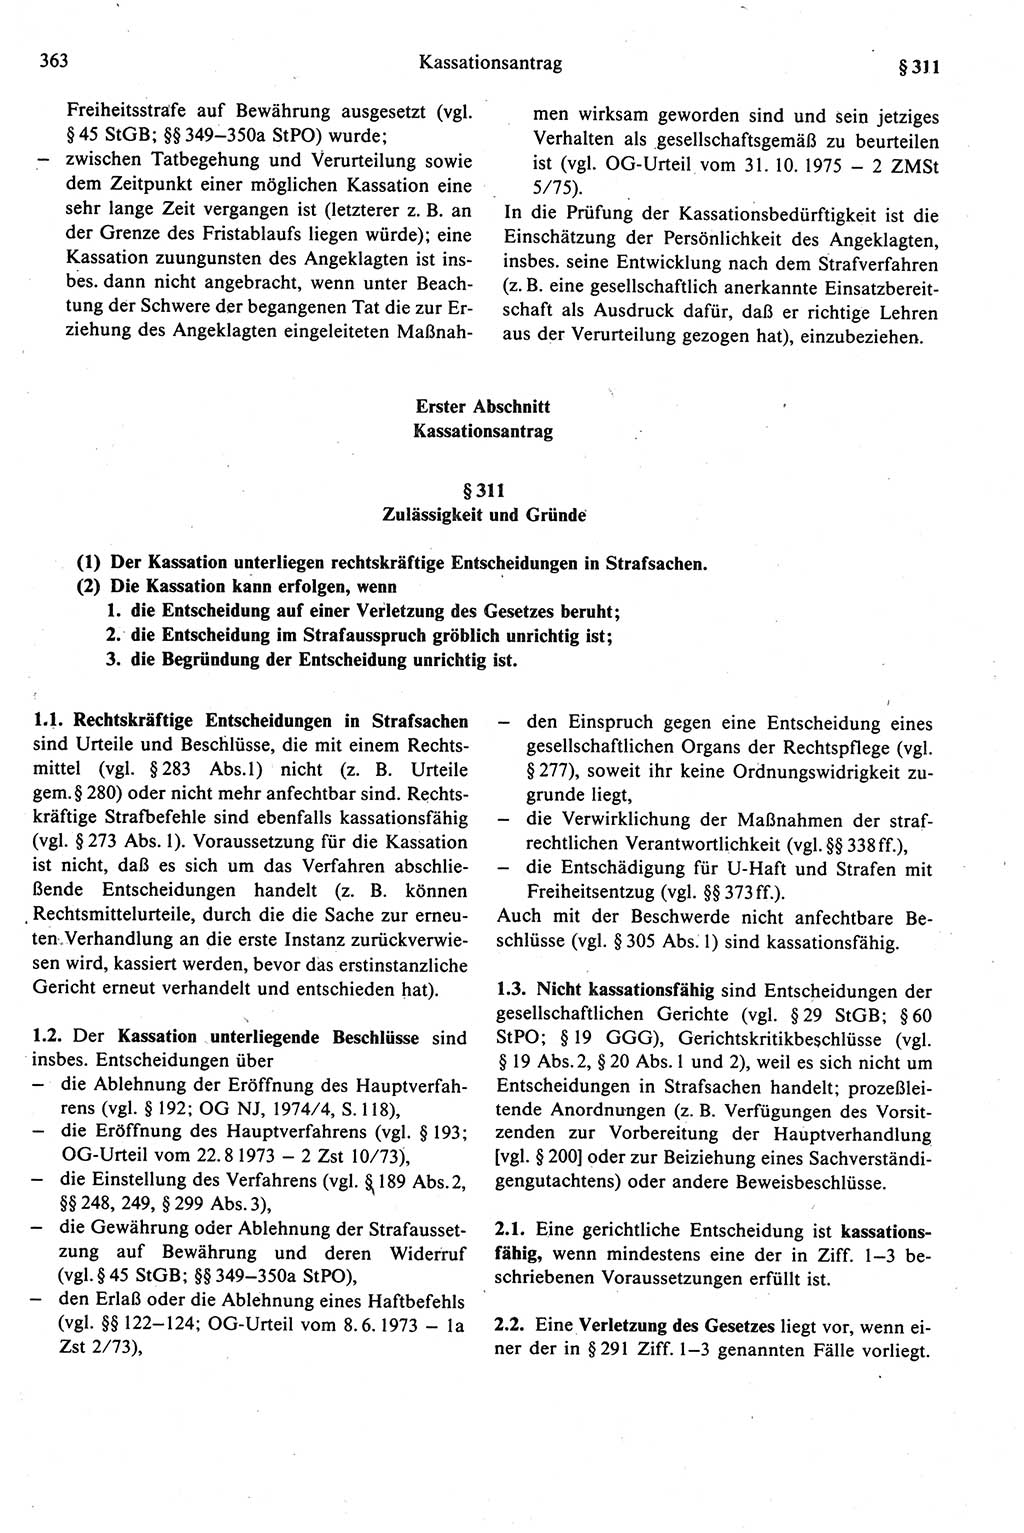 Strafprozeßrecht der DDR (Deutsche Demokratische Republik), Kommentar zur Strafprozeßordnung (StPO) 1989, Seite 363 (Strafprozeßr. DDR Komm. StPO 1989, S. 363)